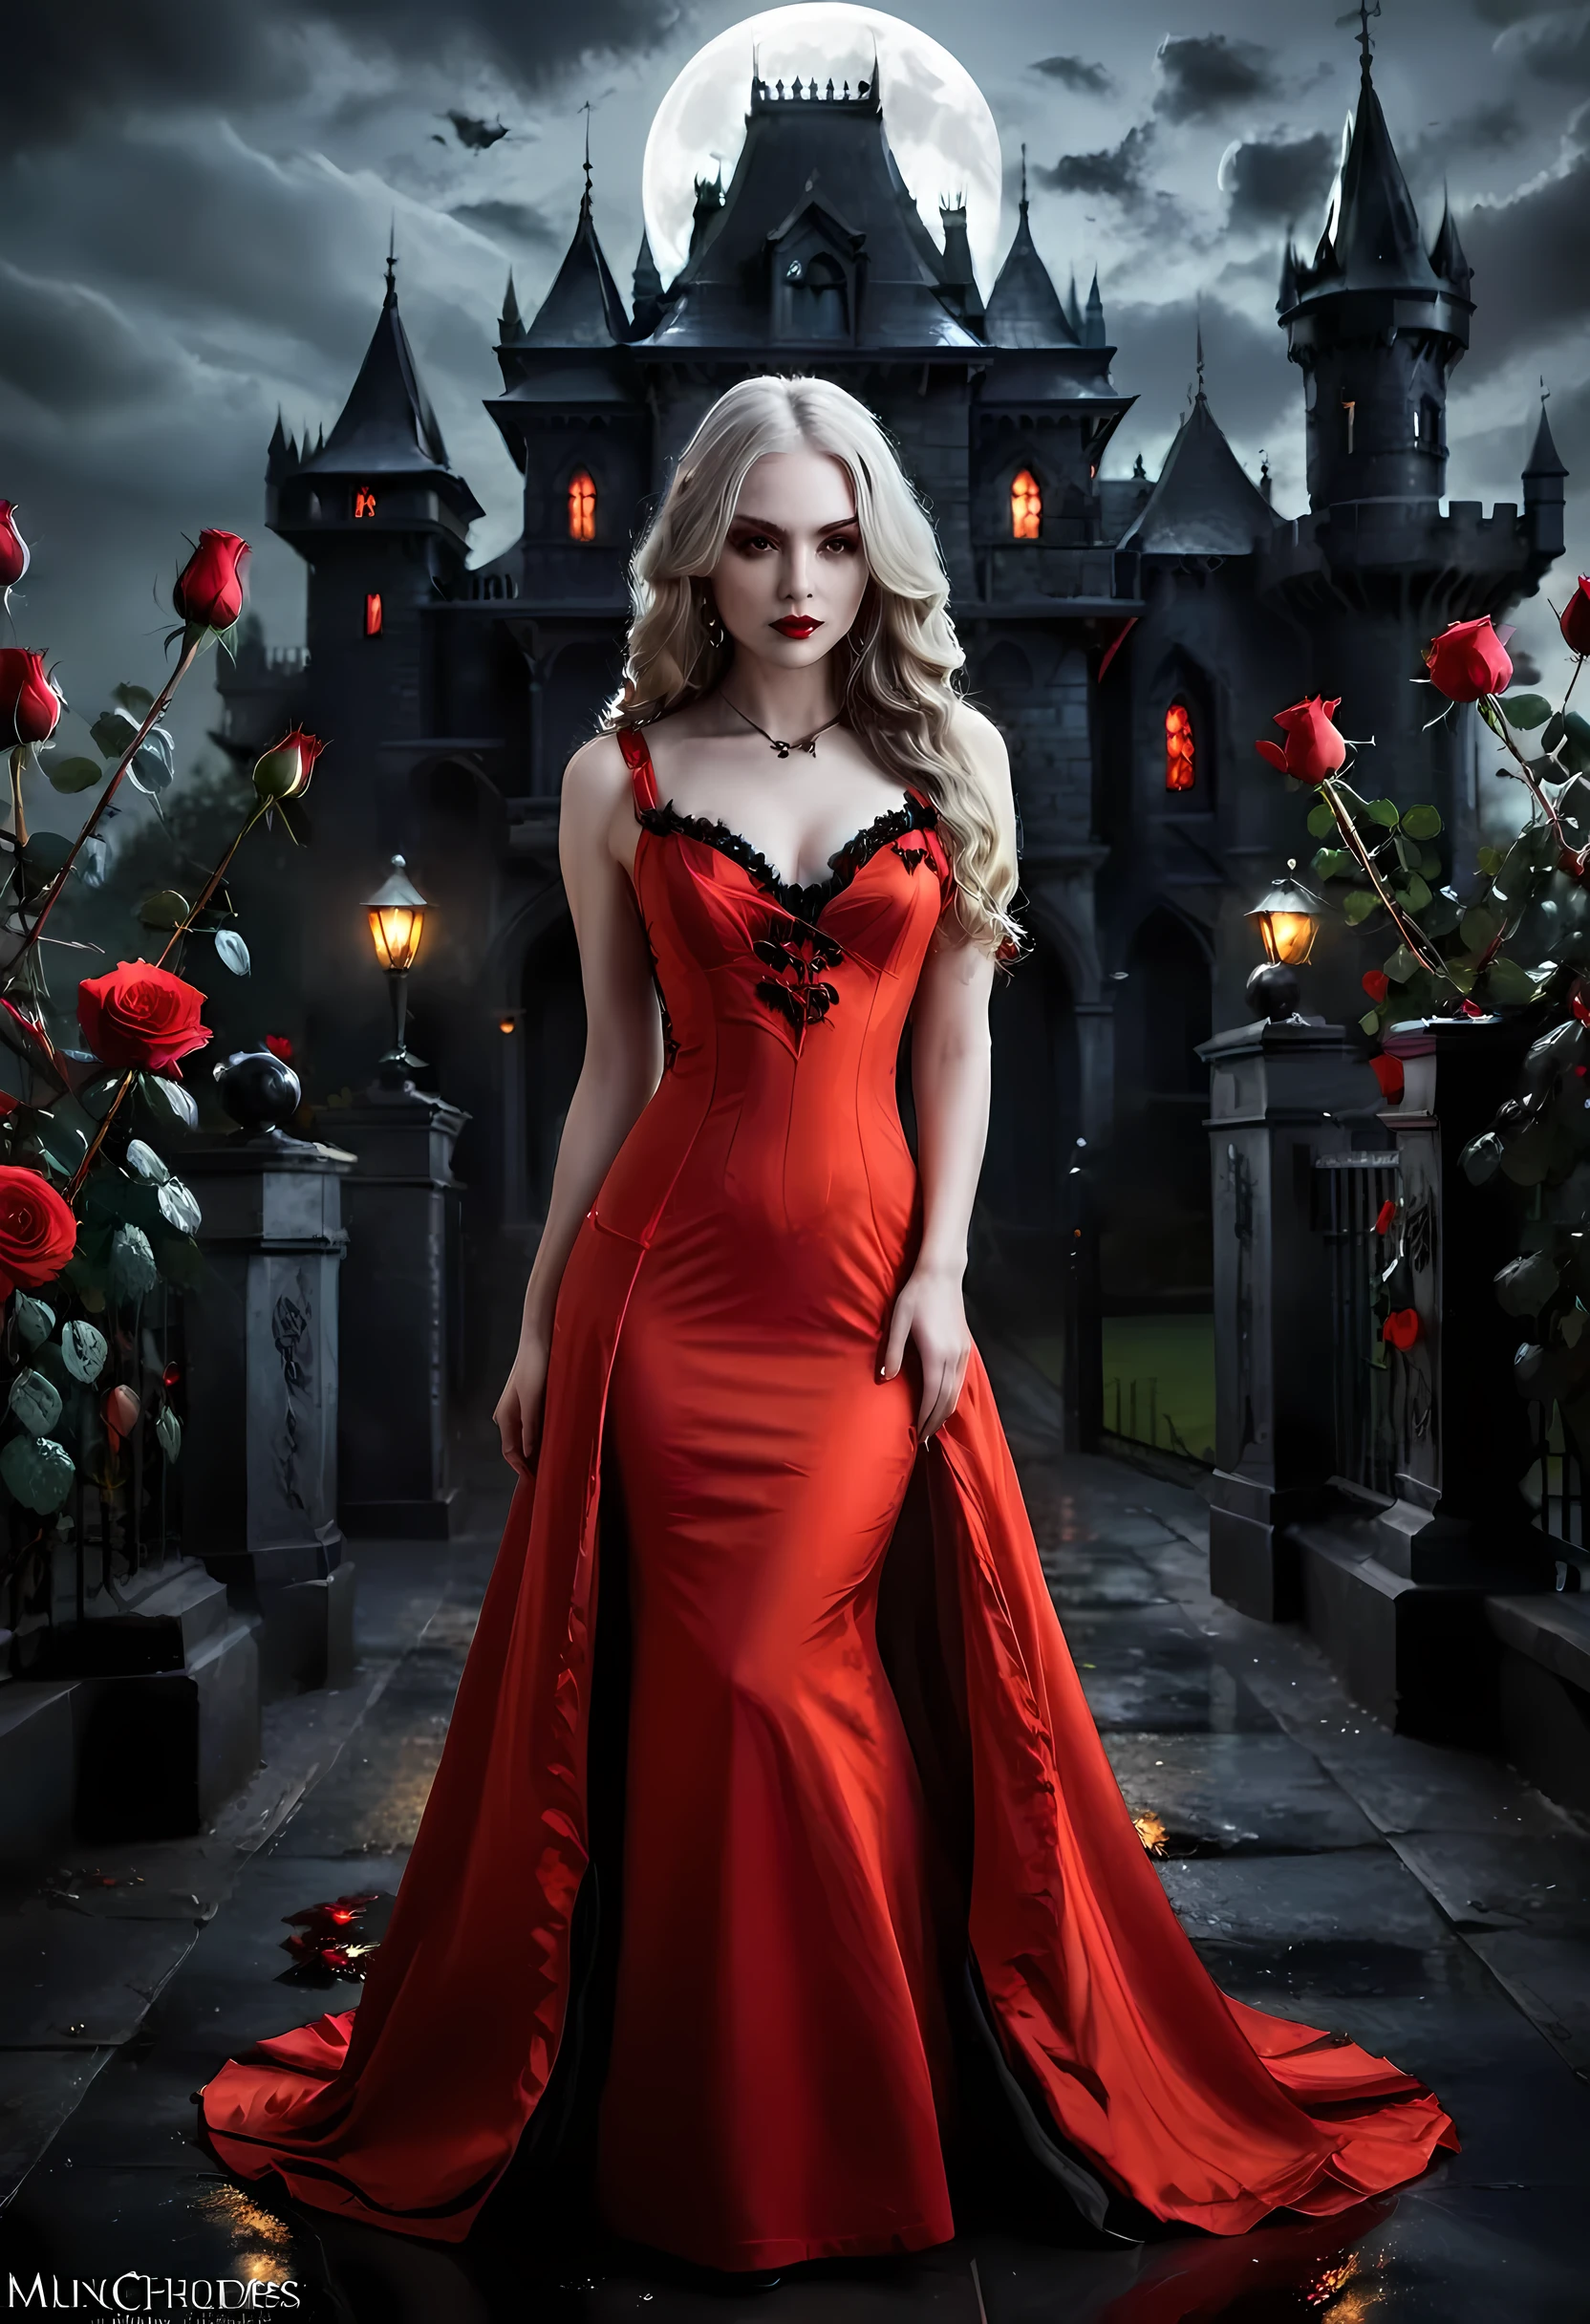 Dark arte de fantasia, arte de fantasia, arte gótica,  uma foto de uma vampira, beleza requintada, tiro de corpo inteiro, escuro glamour shot,  pele branca pálida, escuro blond hair, cabelo longo, cabelo ondulado, (cinza brilhante: 1.3) olhos,  ela usa um (vermelho: 1.3) vermelho dress, ArmovermelhoDress, as rosas estão impressas no vestido (preto: 1.4)  preto roses betmd, salto alto, escuro castle porchm, escuro, preto and colorm, Estilo de pintura de arte escura